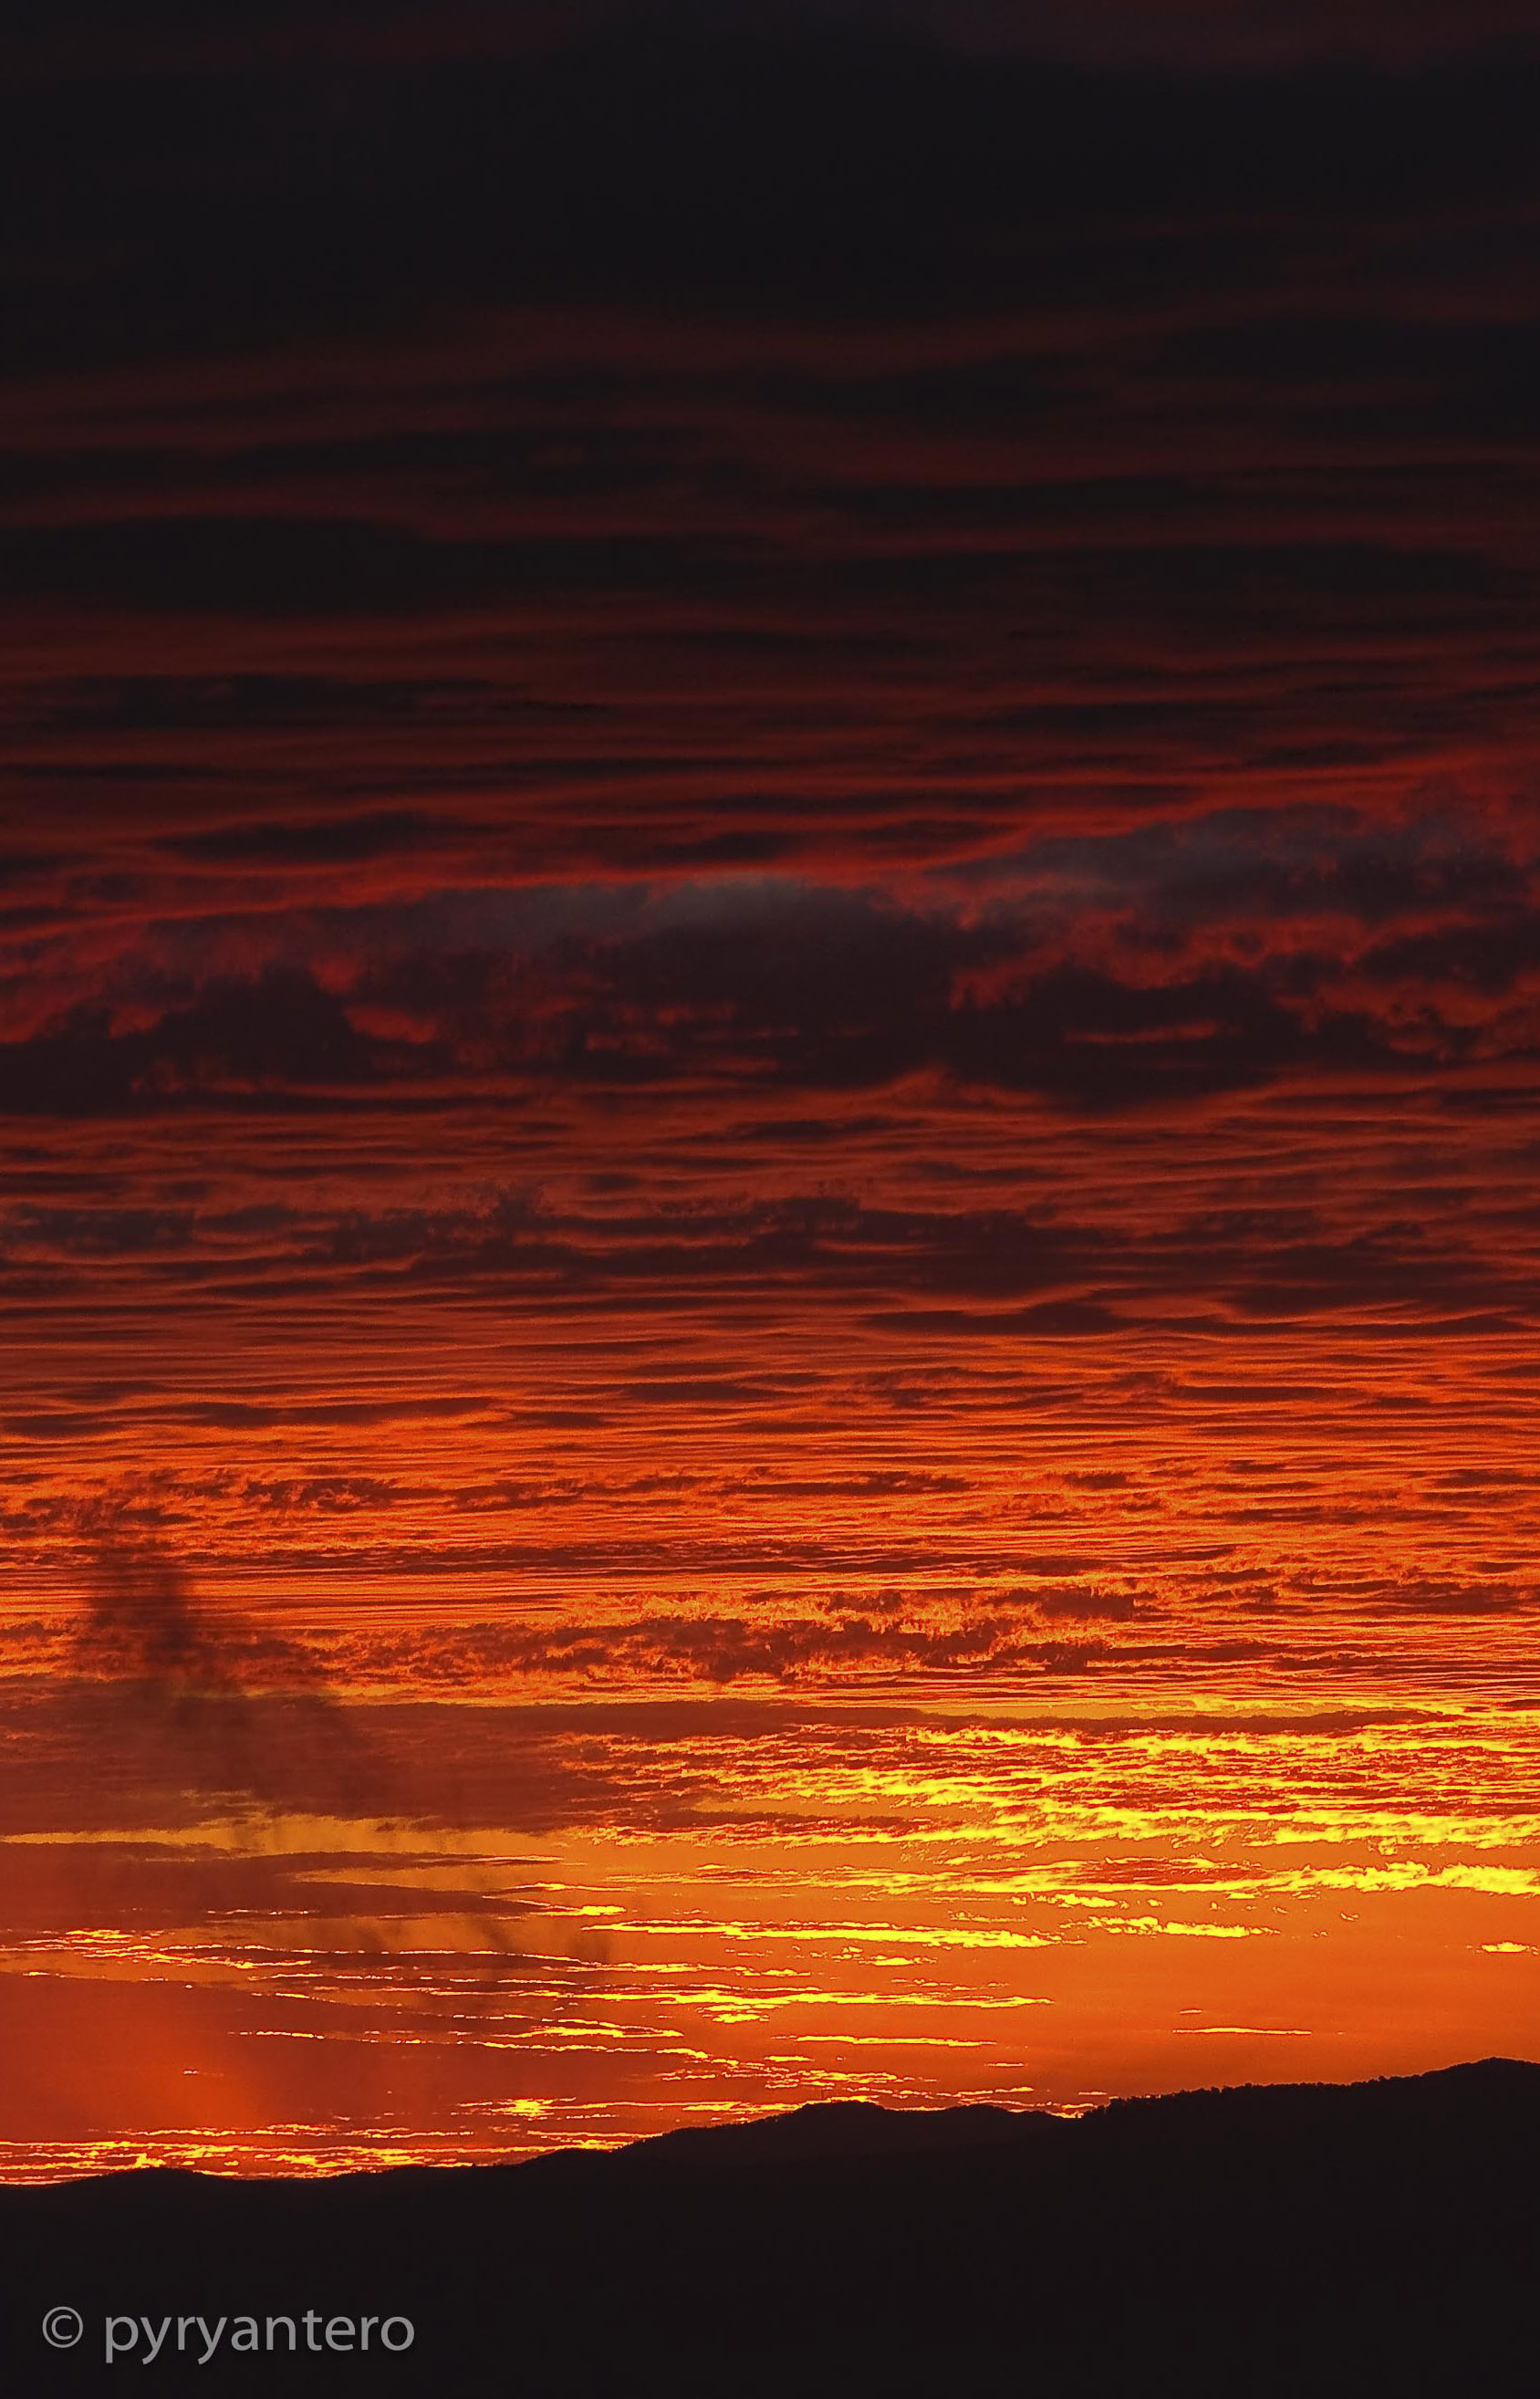 Sunset at Mt Buller, Victoria, Australia. Mount Buller. Pyry Antero Pietiläinen Photography, pyryantero